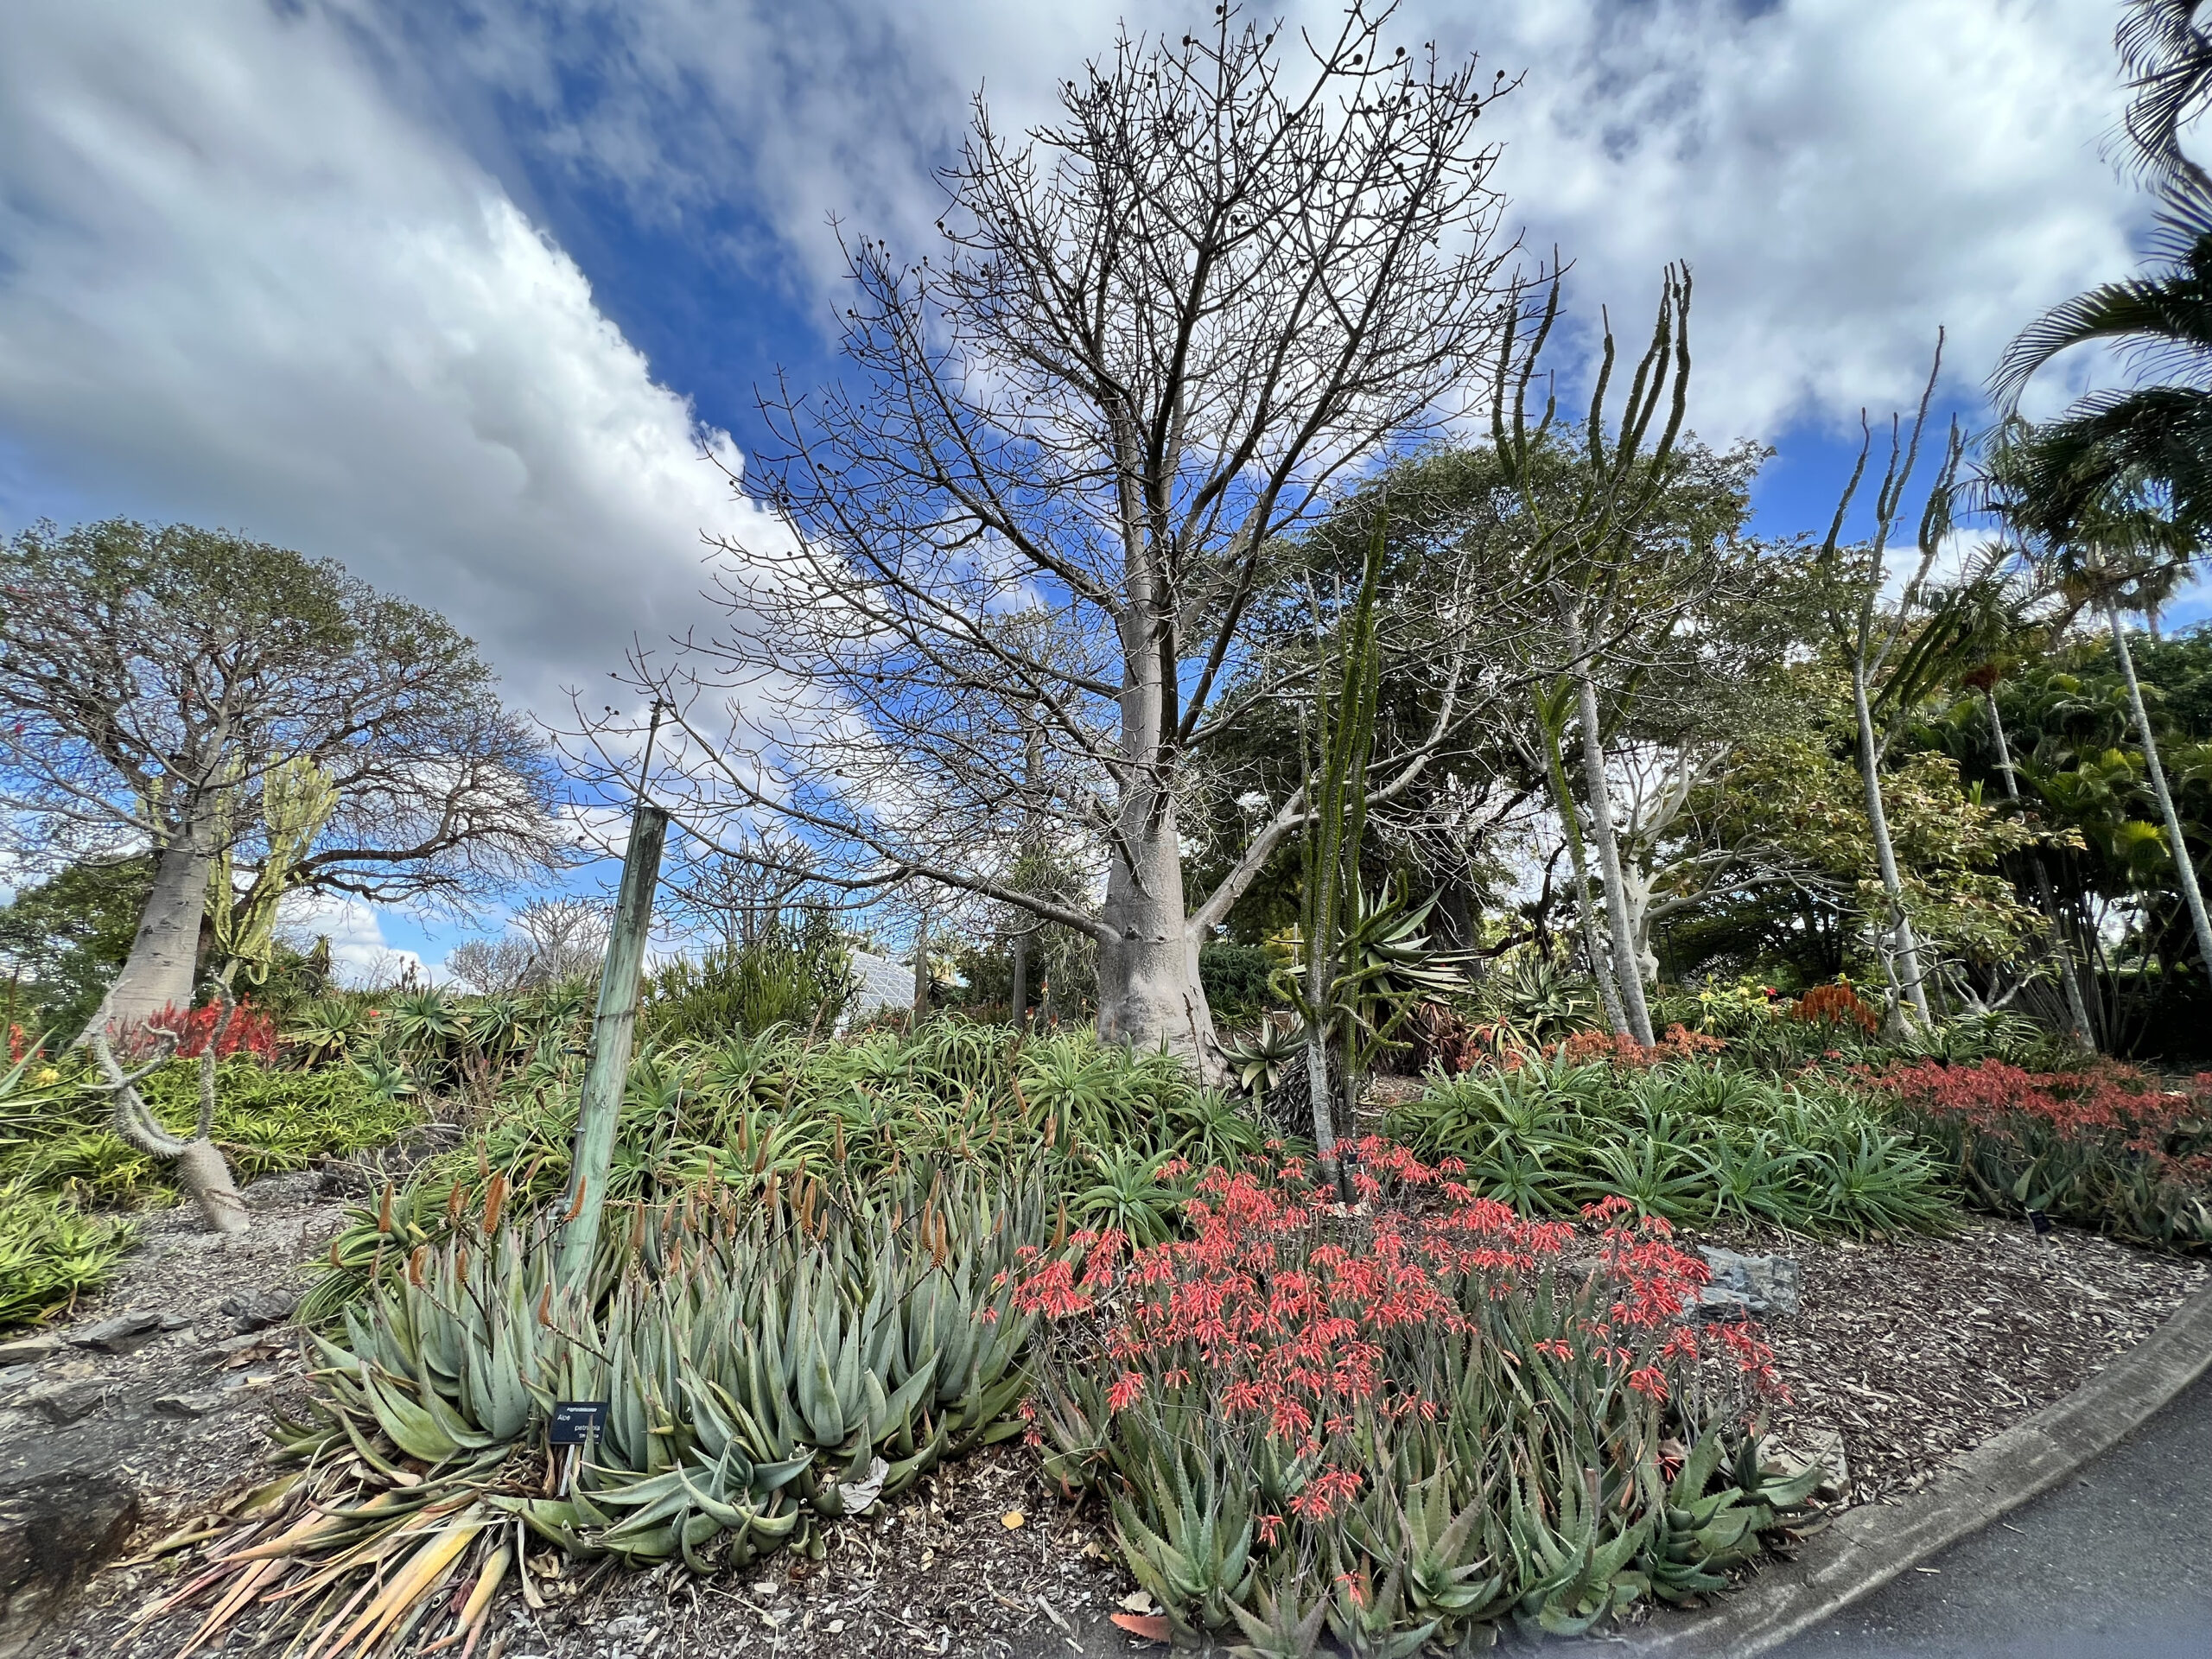 Brisbane Botanic Gardens at Mount Coot-Tha